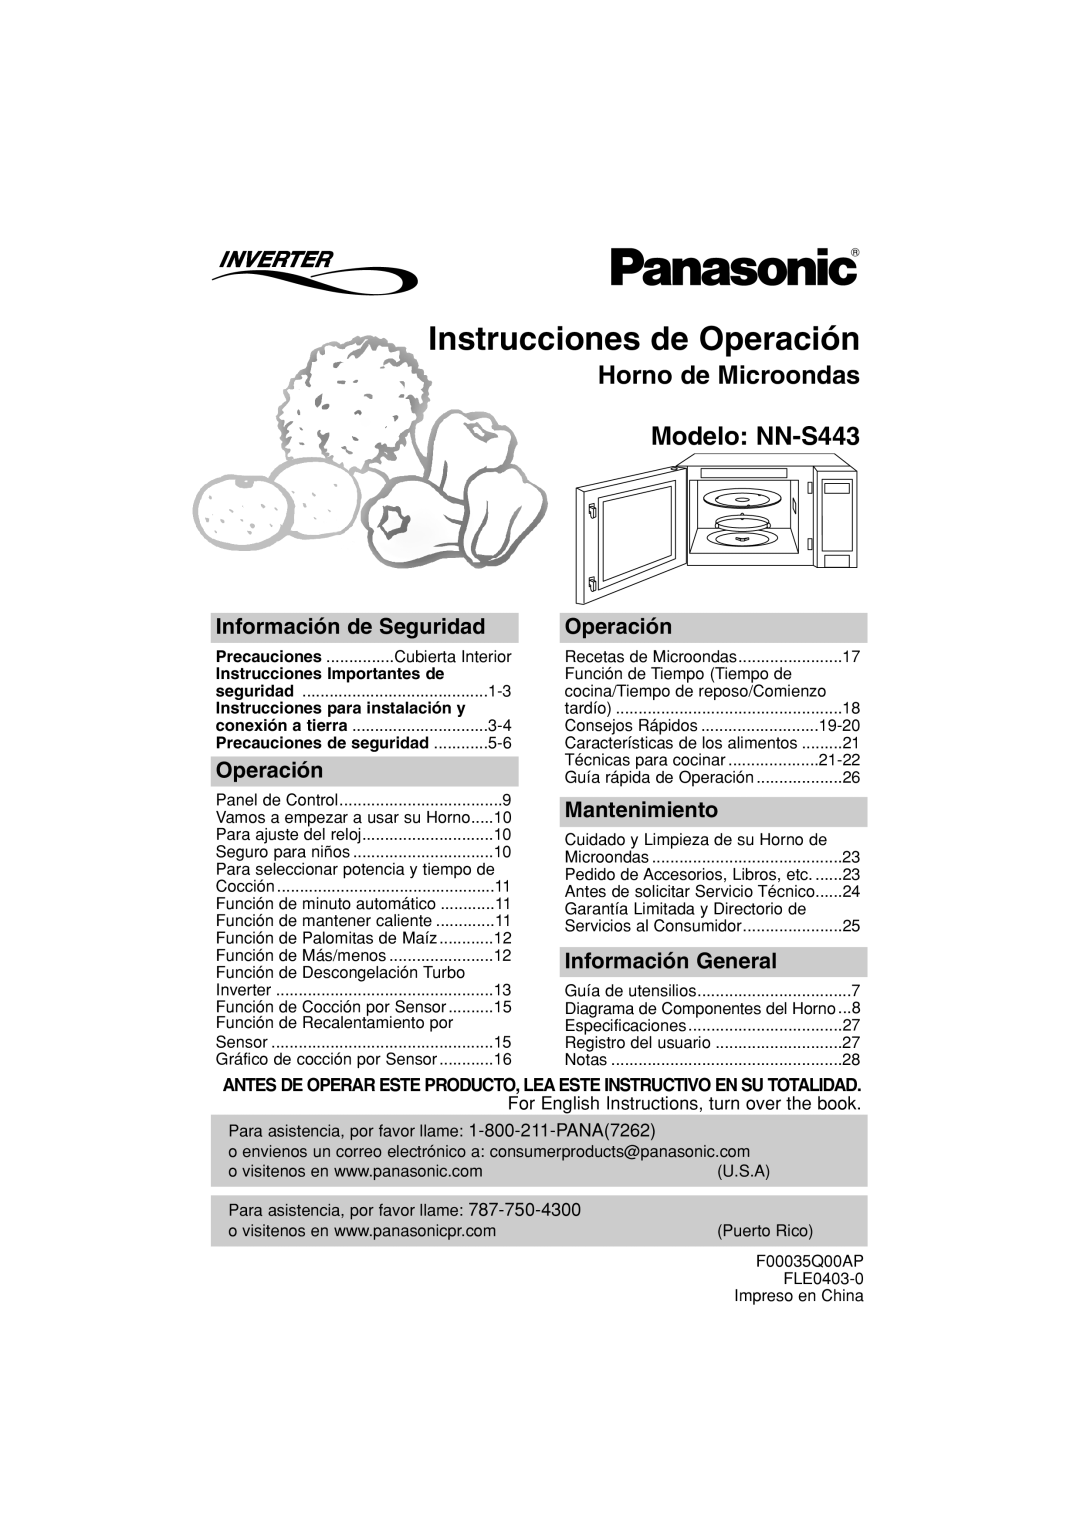 Panasonic Instrucciones de Operación, Horno de Microondas Modelo NN-S443, Información de Seguridad, Mantenimiento 